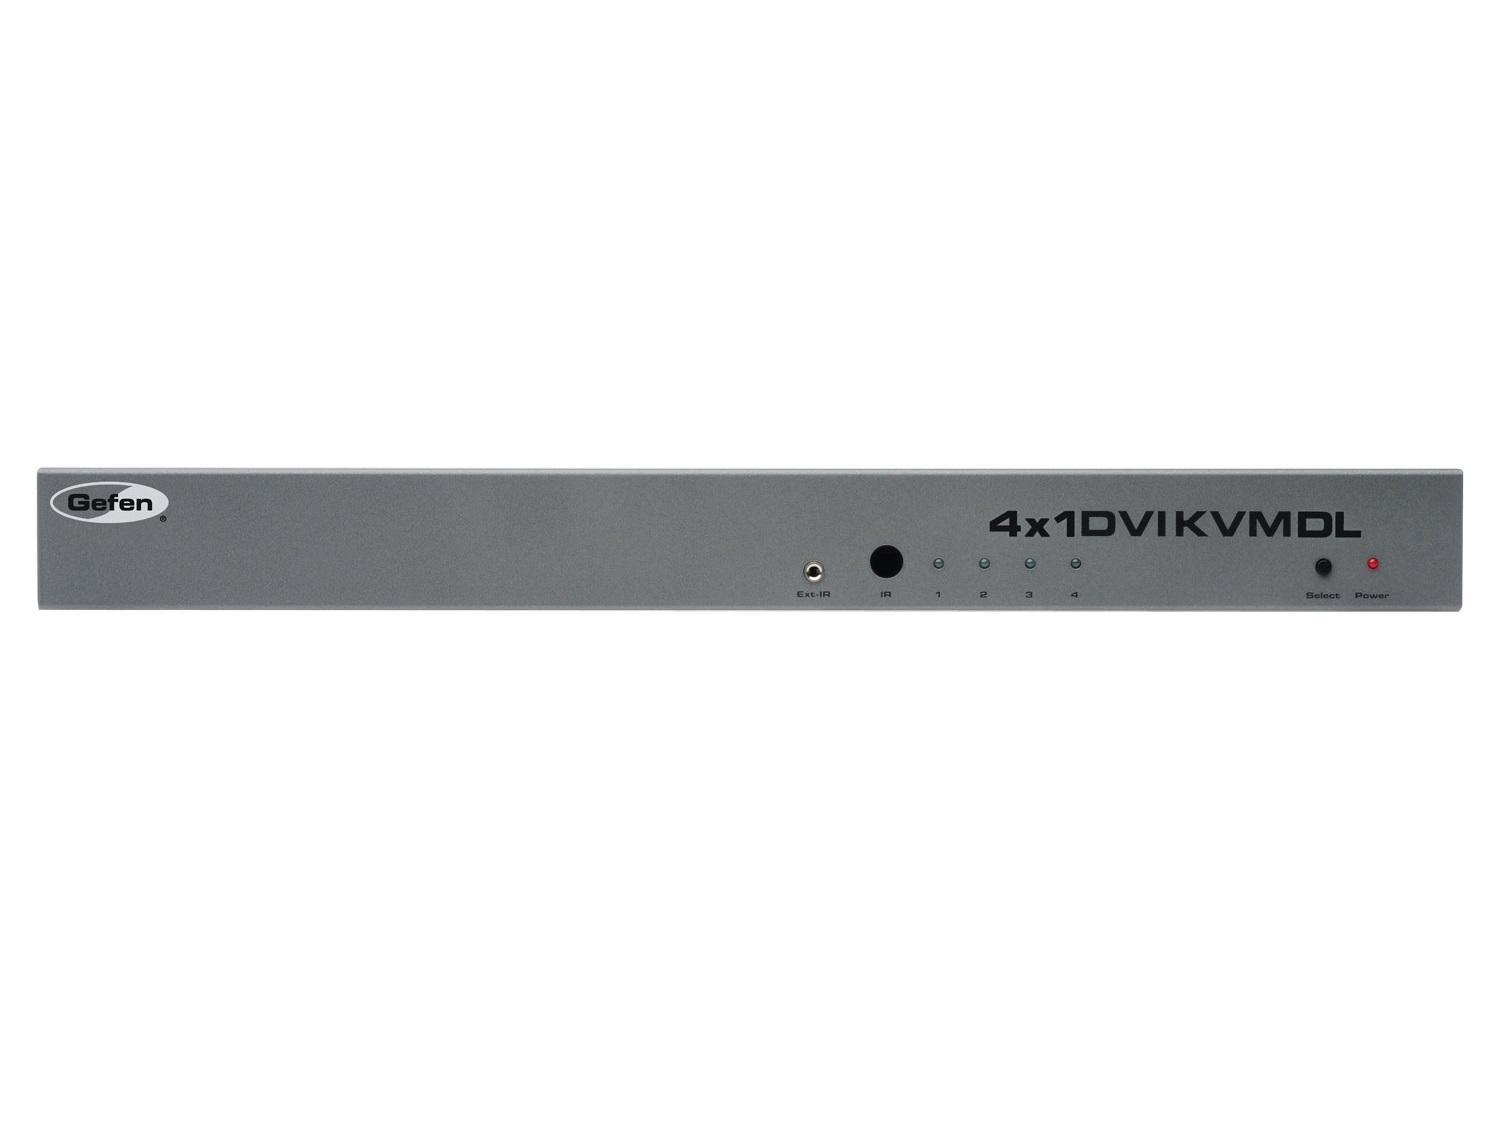 EXT-DVIKVM-441DL 4x1 DVI KVM Switcher by Gefen